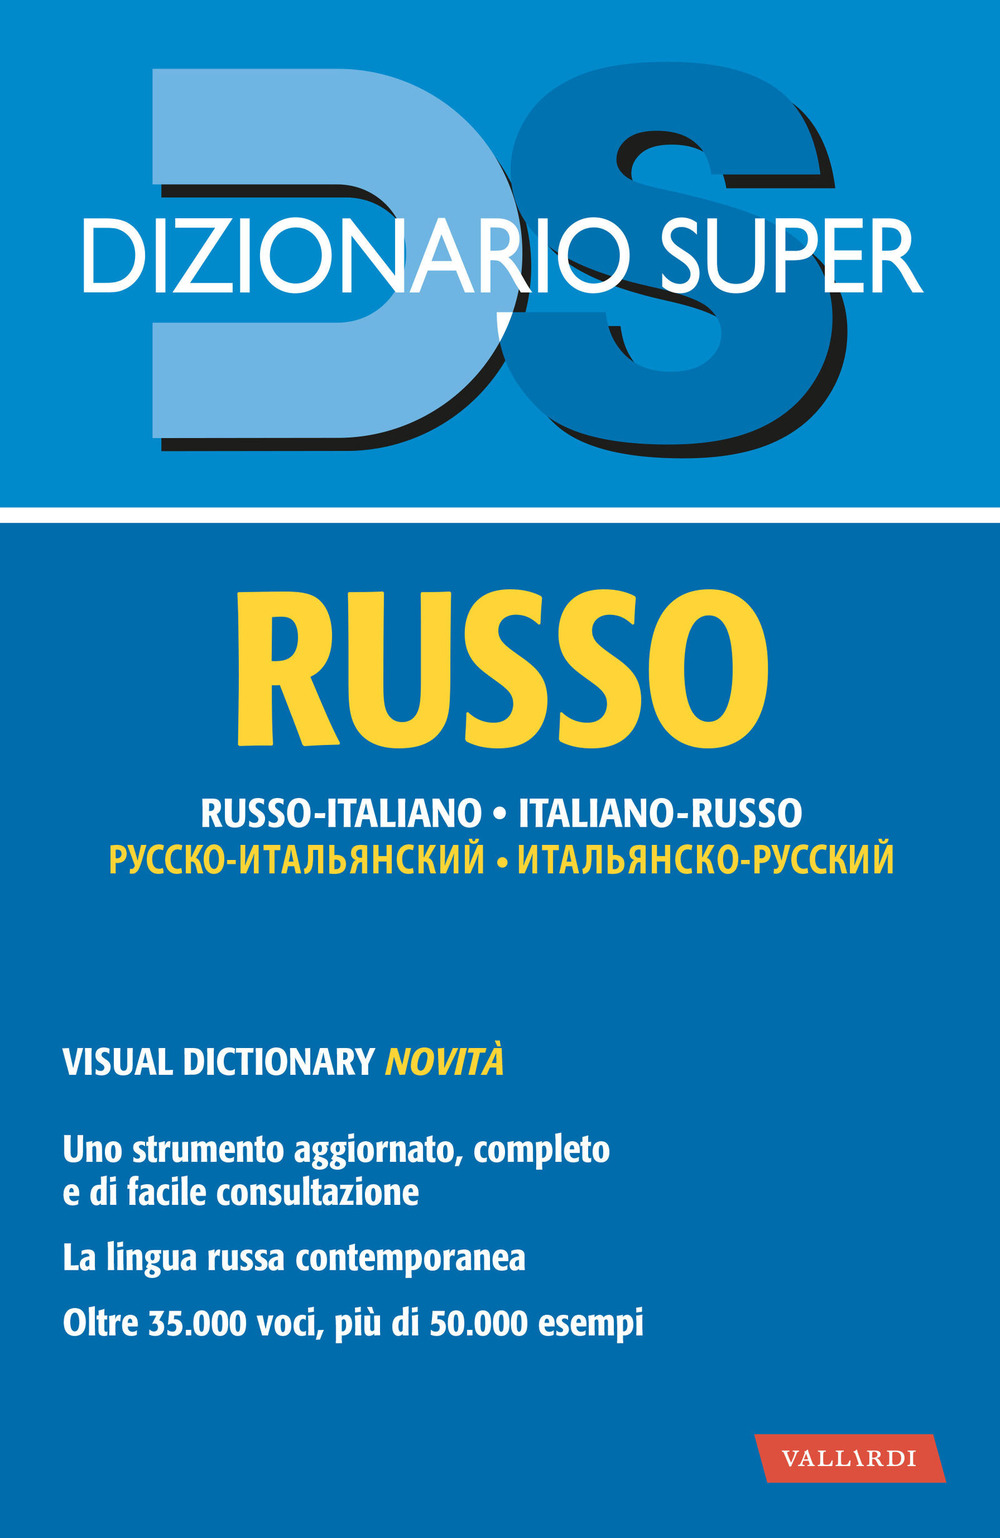 Dizionario russo. Russo-italiano, italiano-russo. Con visual